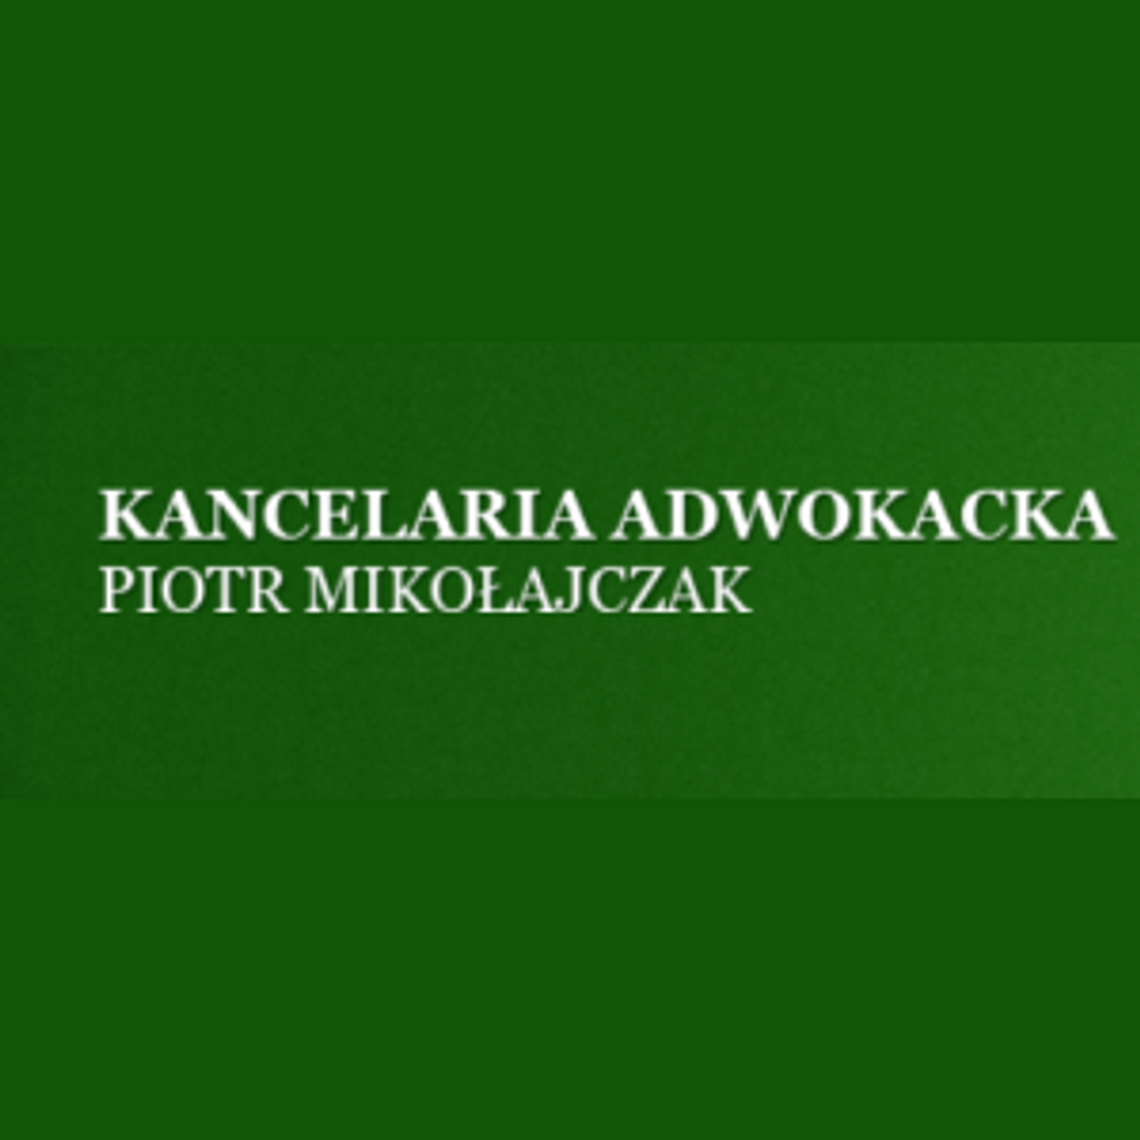 Adwokat Piła - Piotr Mikołajczak - Kancelaria Adwokacka